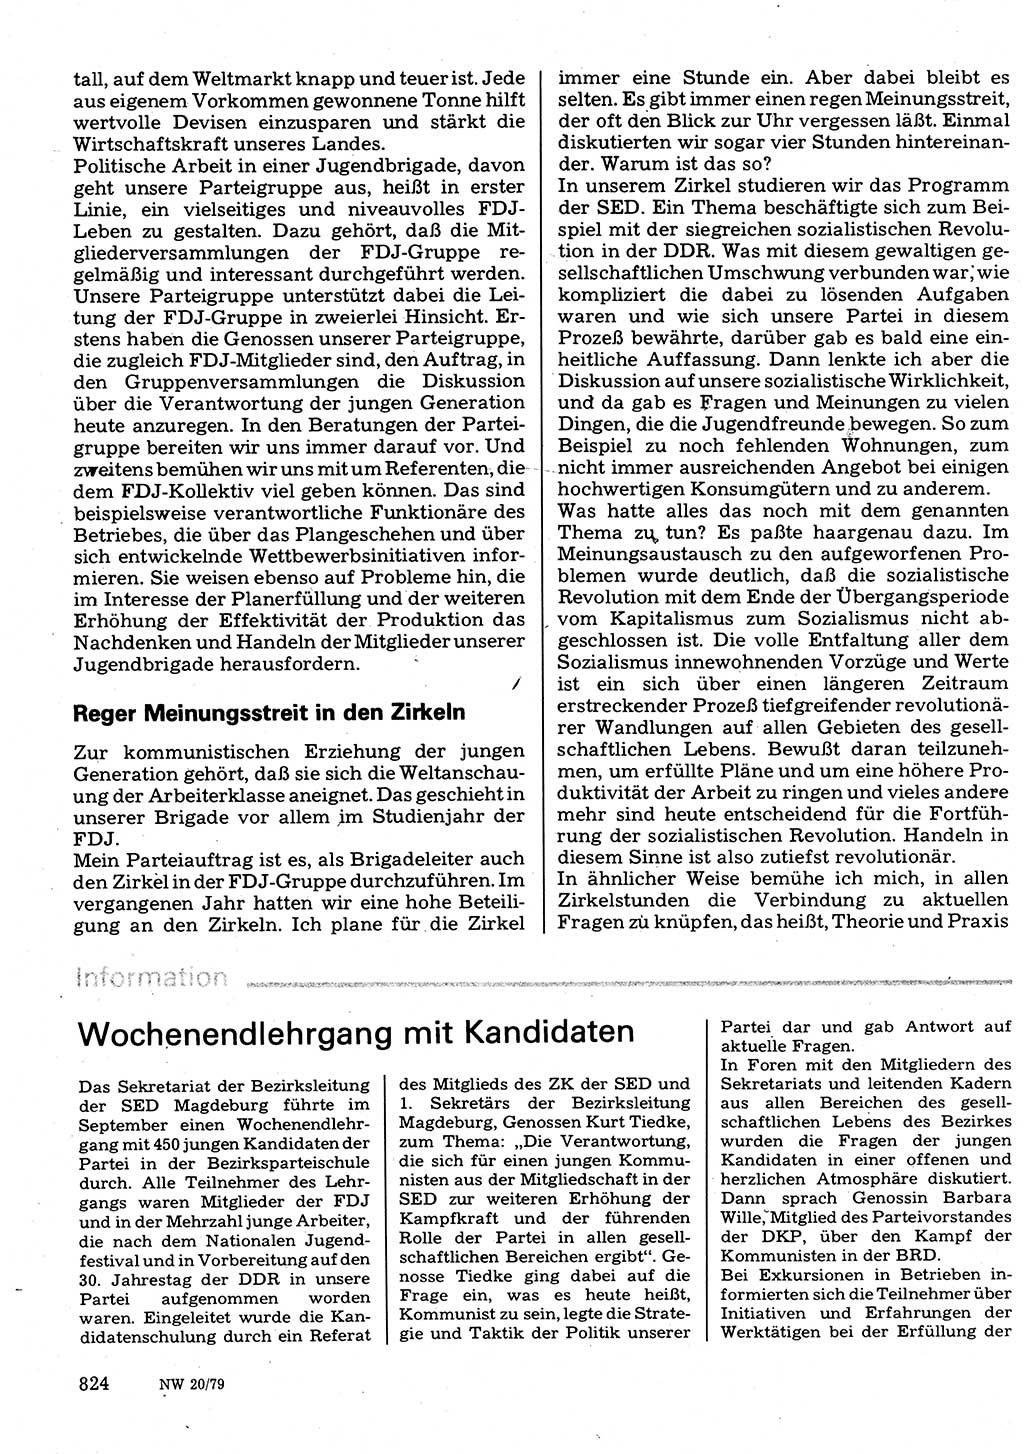 Neuer Weg (NW), Organ des Zentralkomitees (ZK) der SED (Sozialistische Einheitspartei Deutschlands) für Fragen des Parteilebens, 34. Jahrgang [Deutsche Demokratische Republik (DDR)] 1979, Seite 824 (NW ZK SED DDR 1979, S. 824)